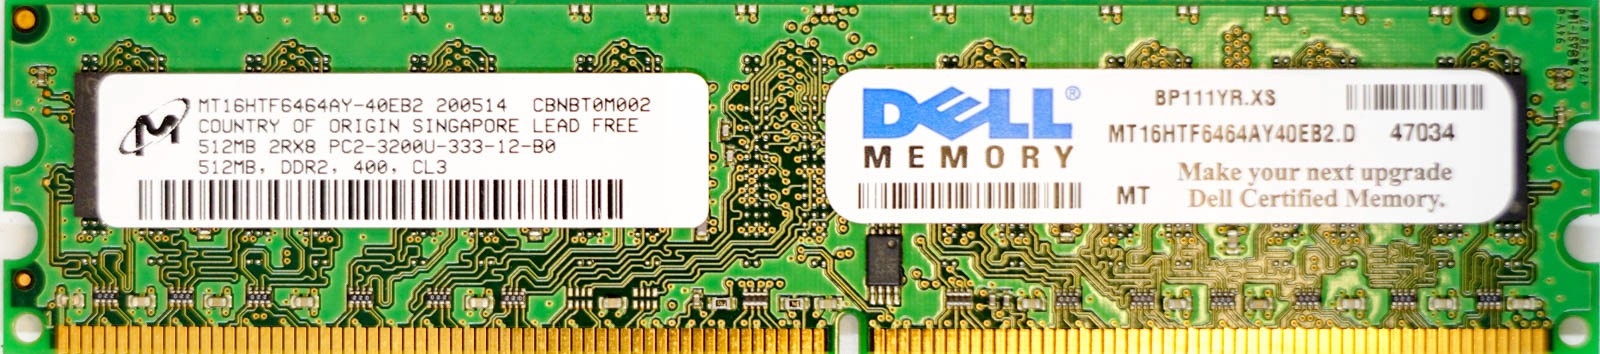 Micron - 512MB PC2-3200U (DDR2-400Mhz, 2RX8)